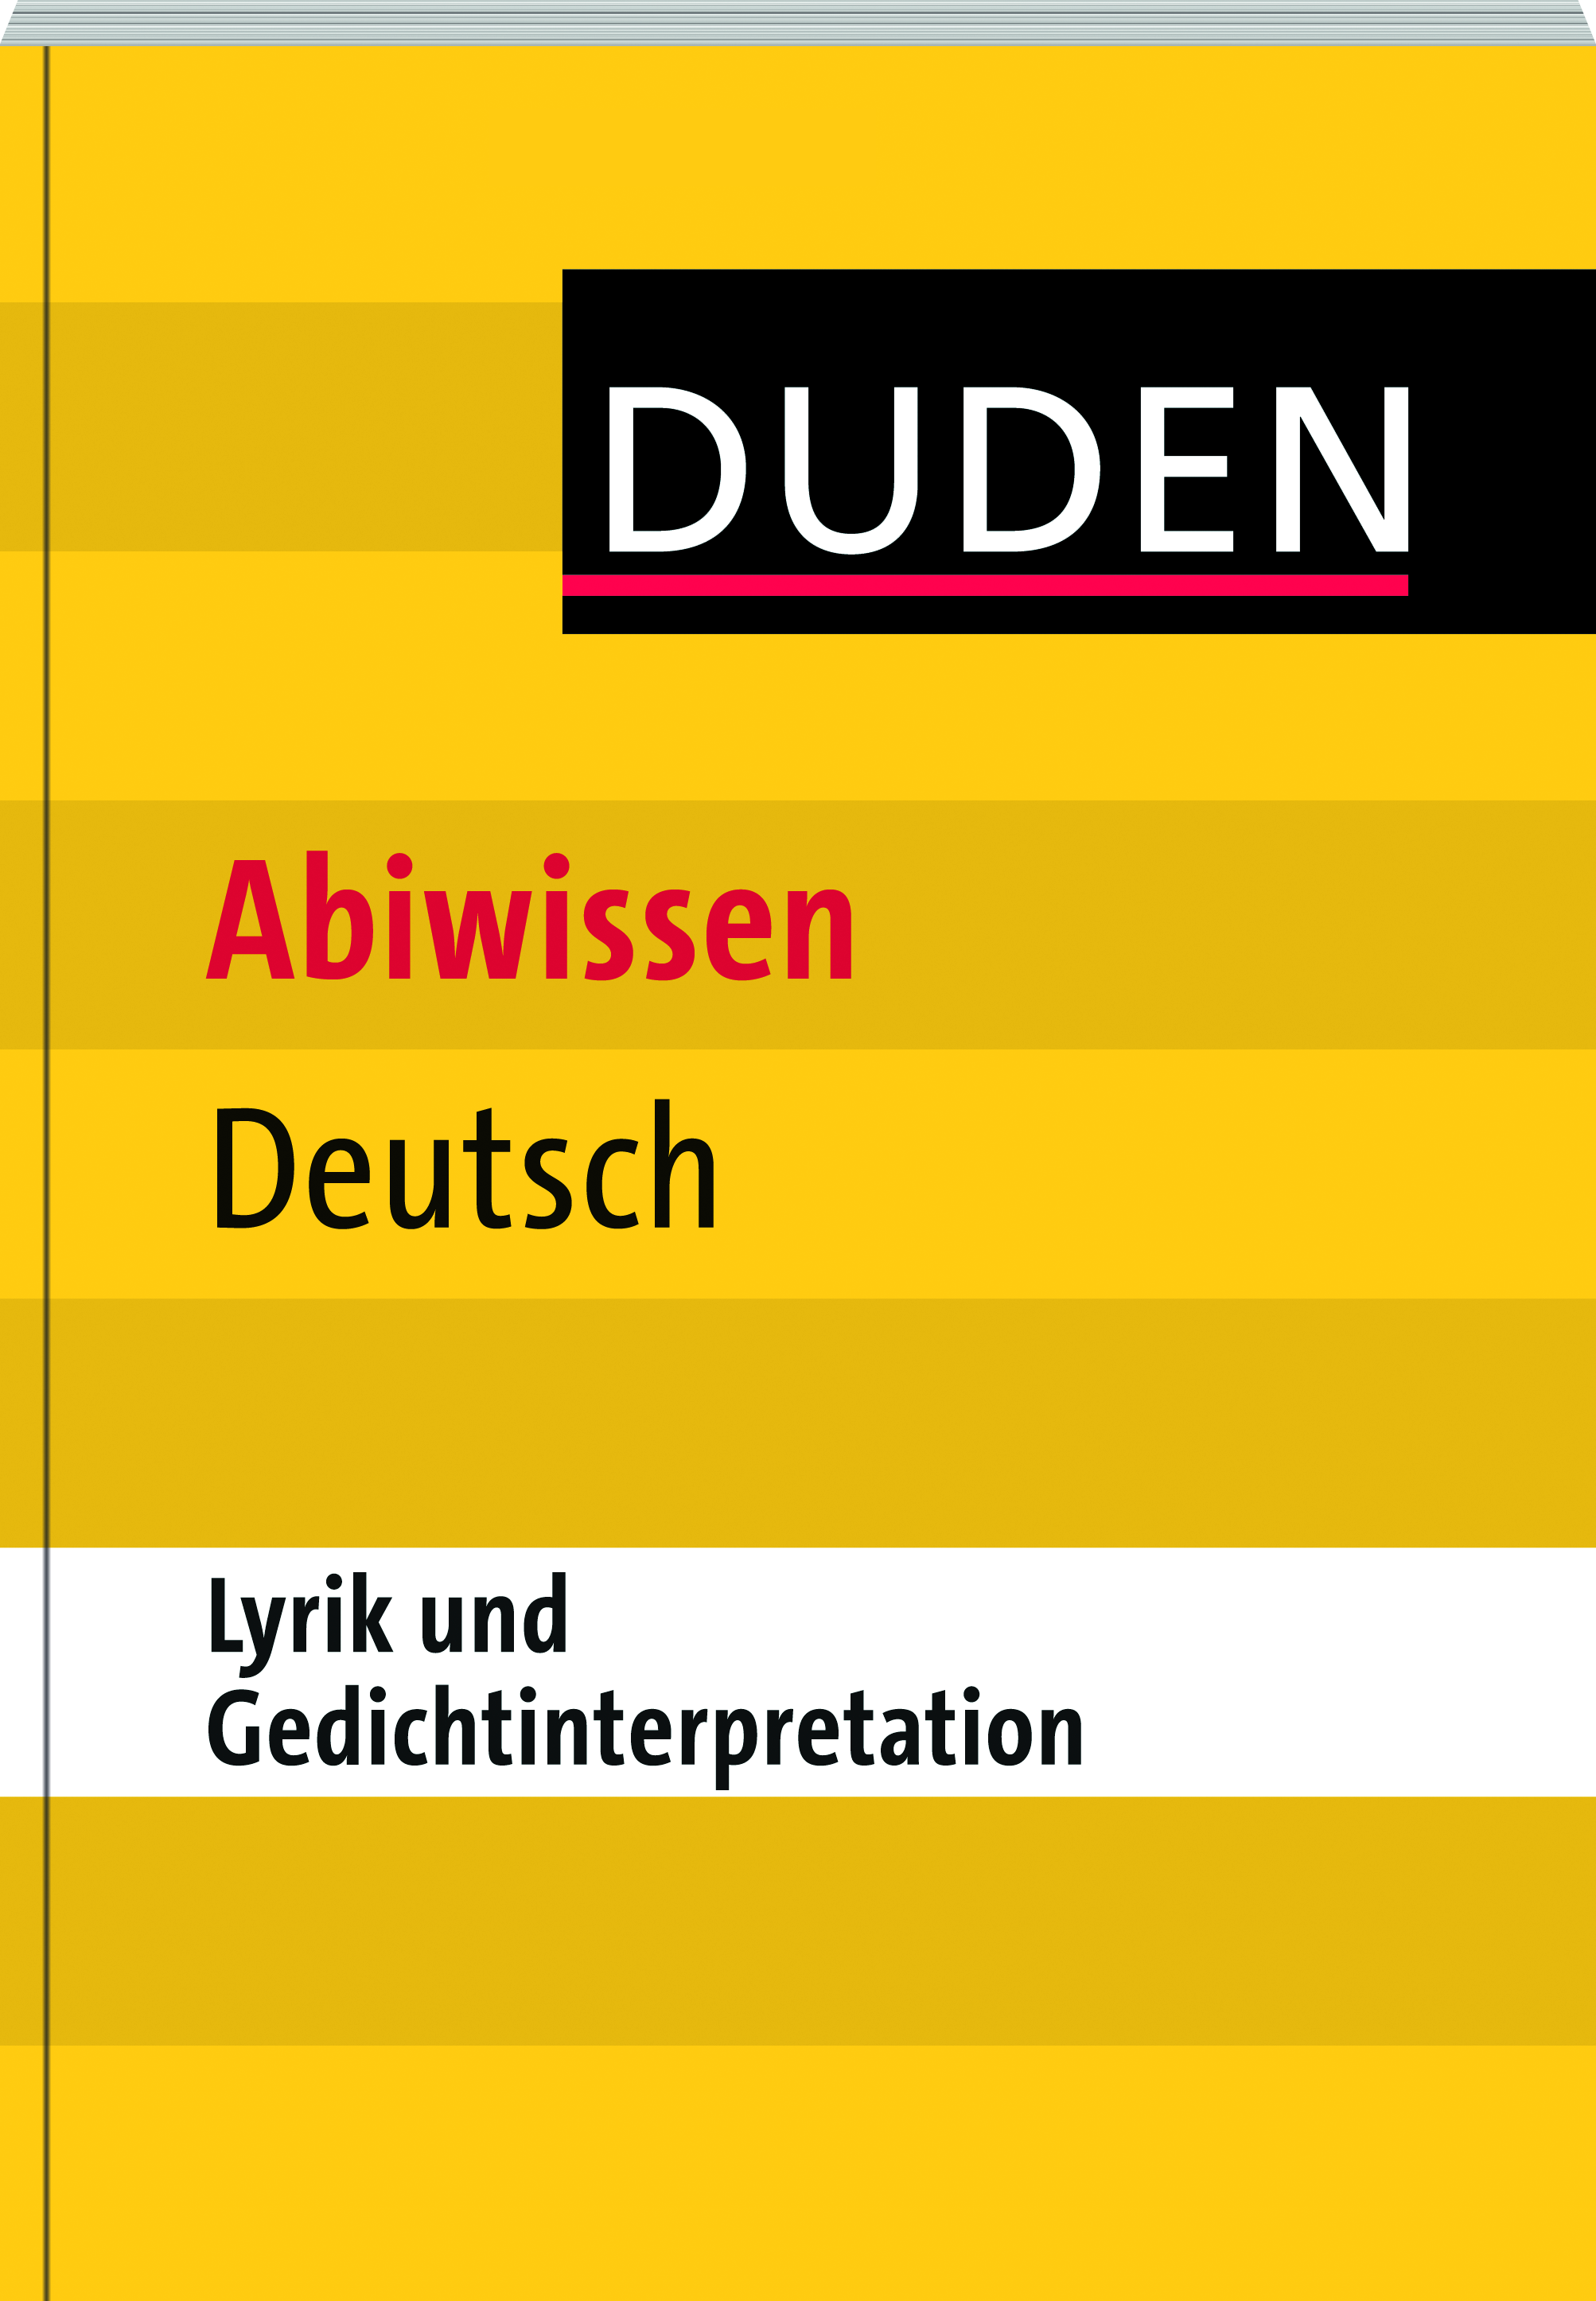 Abiwissen Deutsch - Lyrik und Gedichtinterpretation